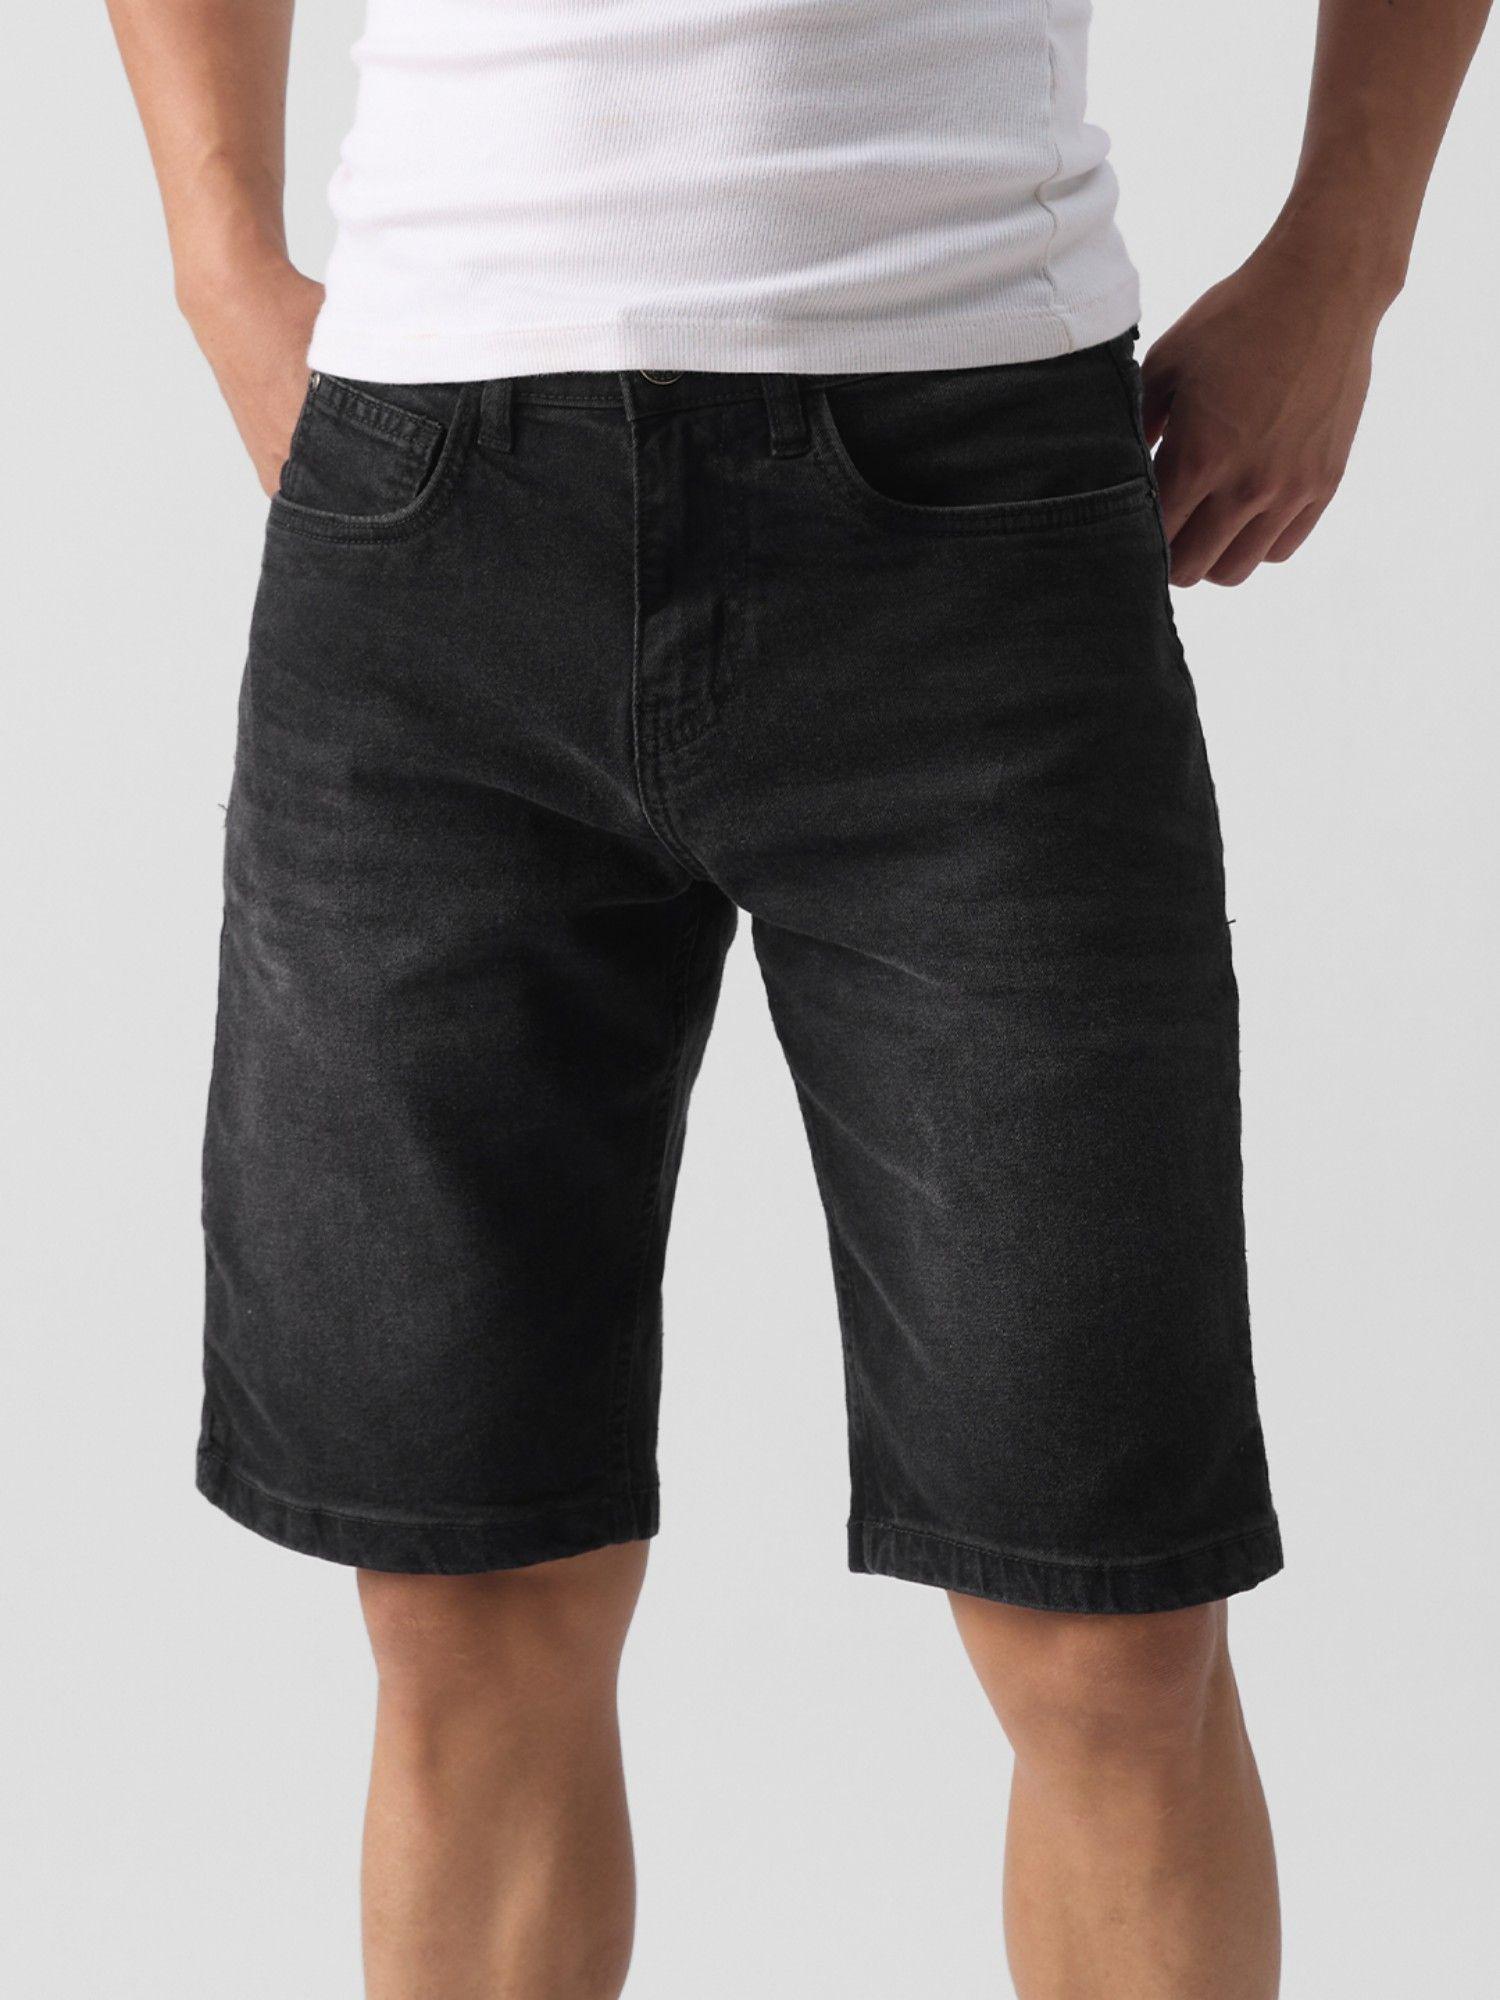 solids: carbon black denim shorts for mens